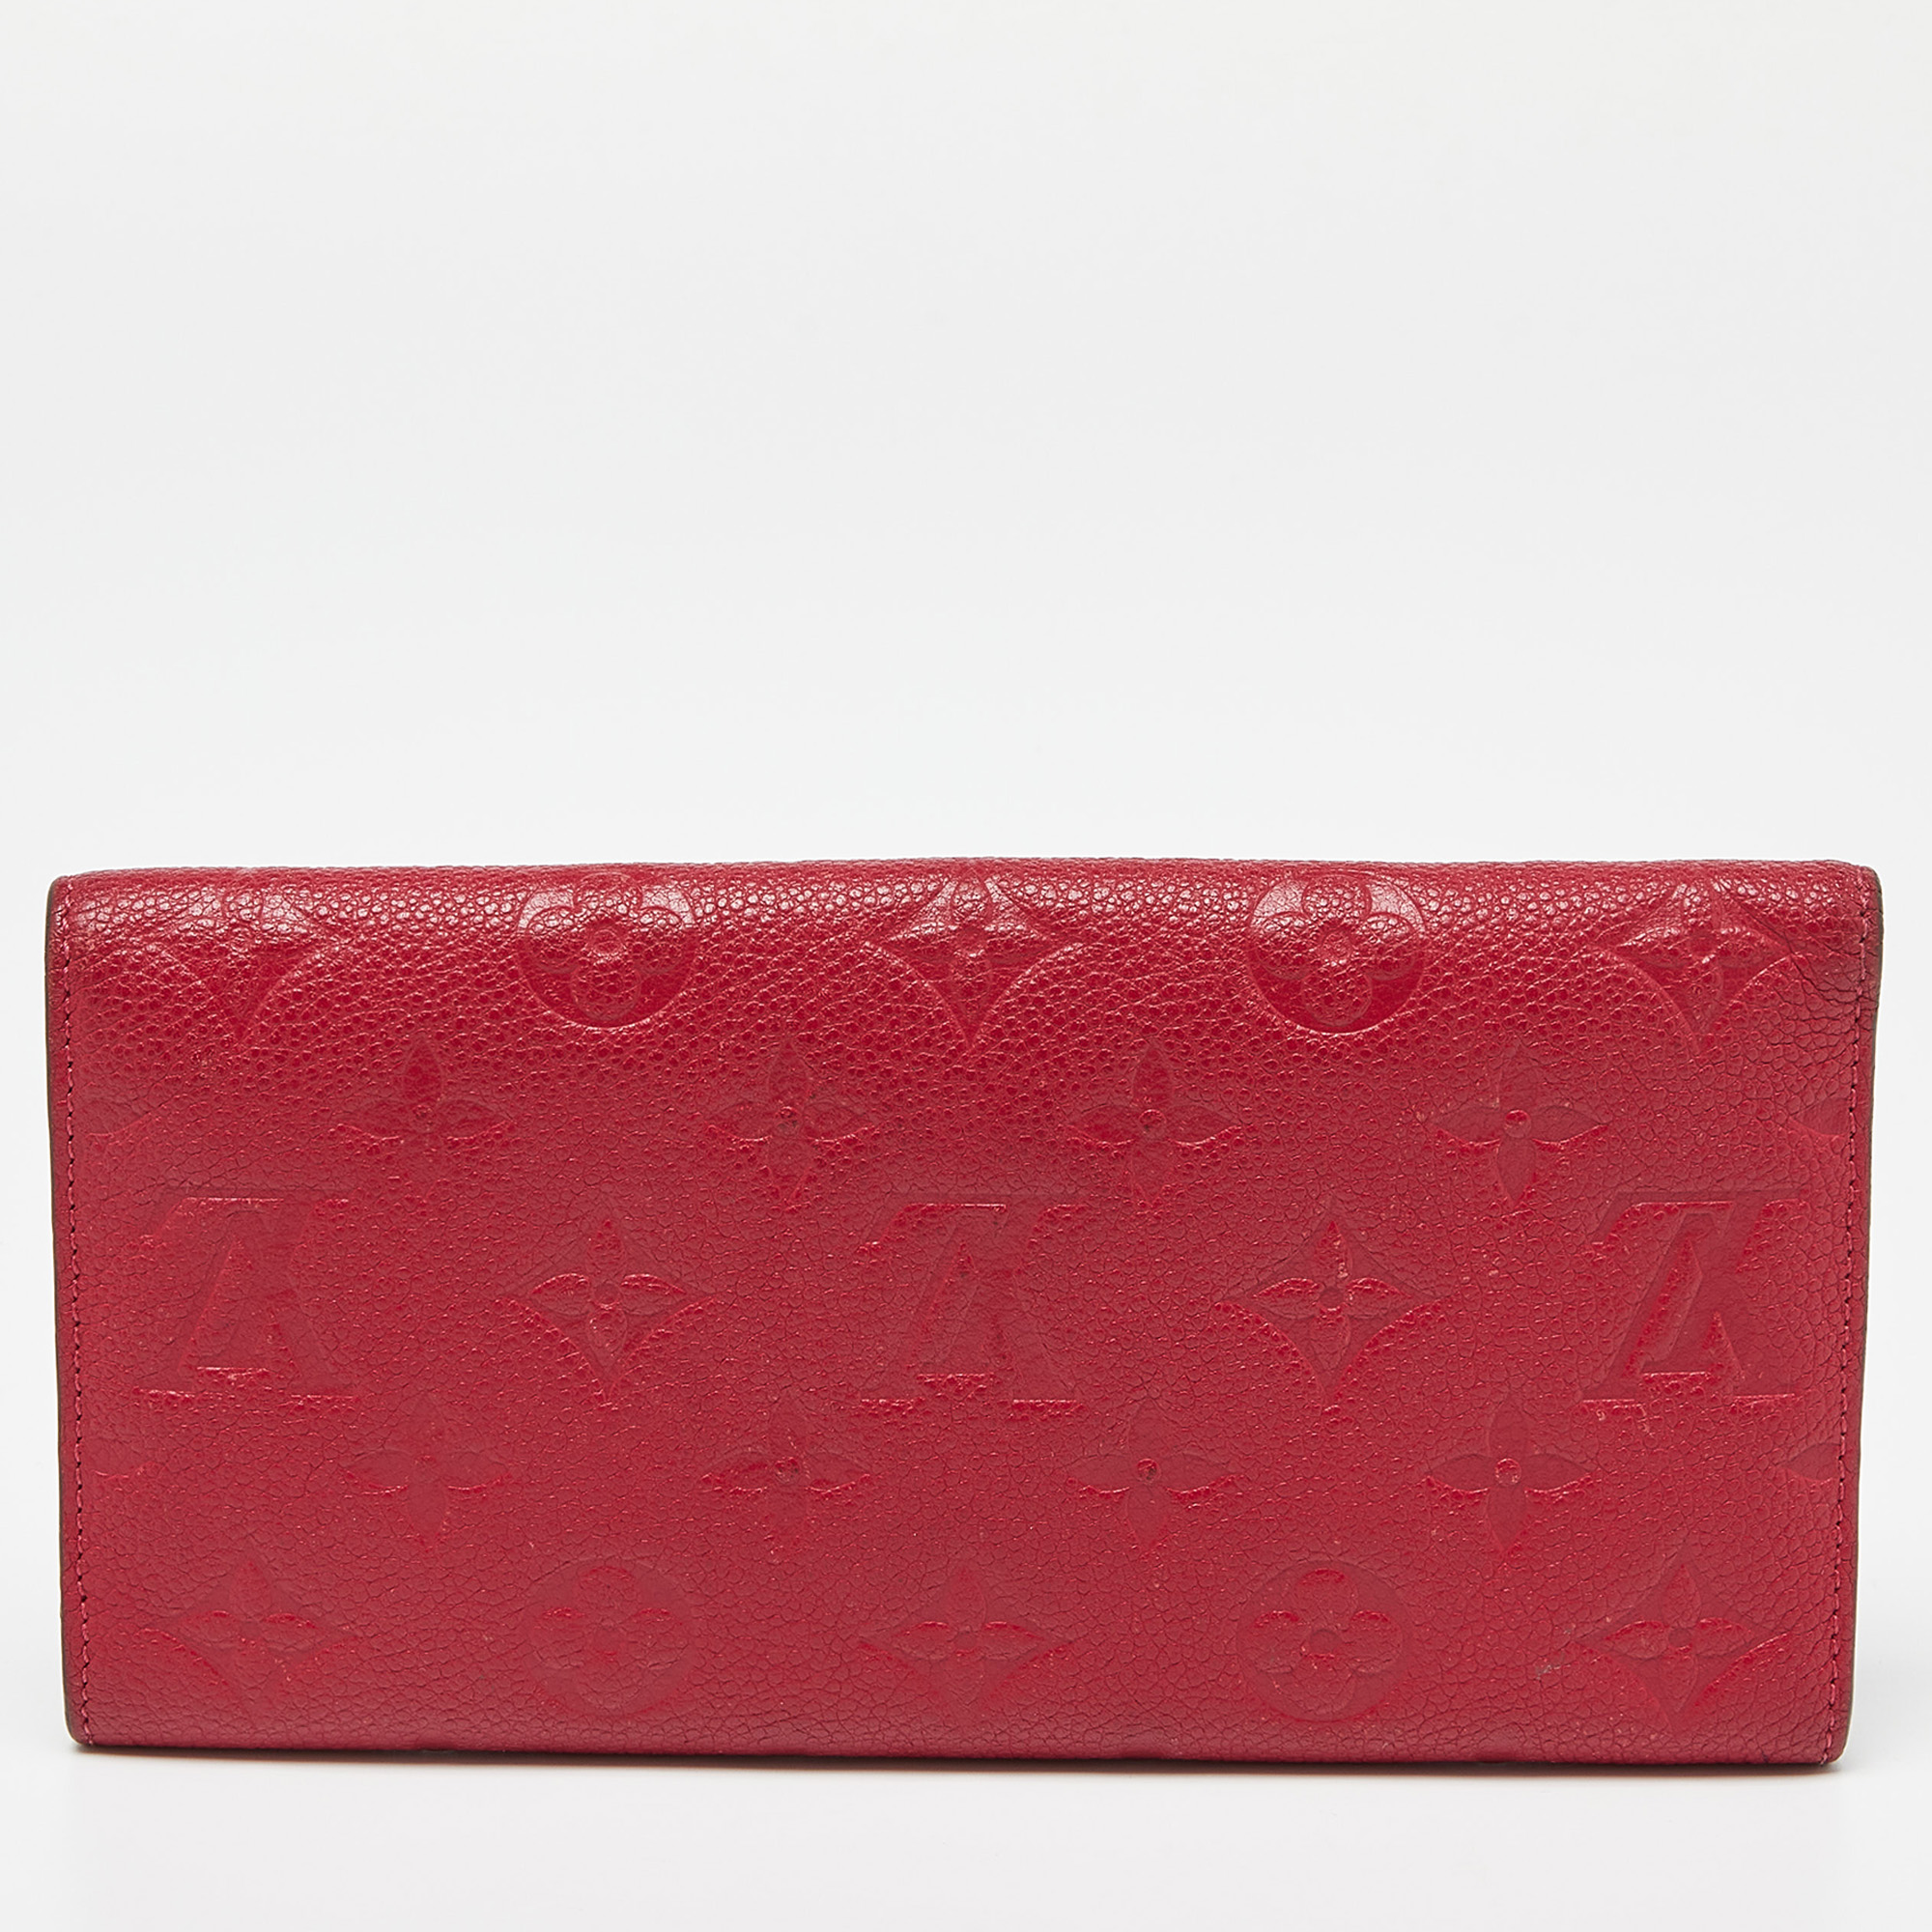 Louis Vuitton Jaipur Monogram Empreinte Leather Curieuse Wallet